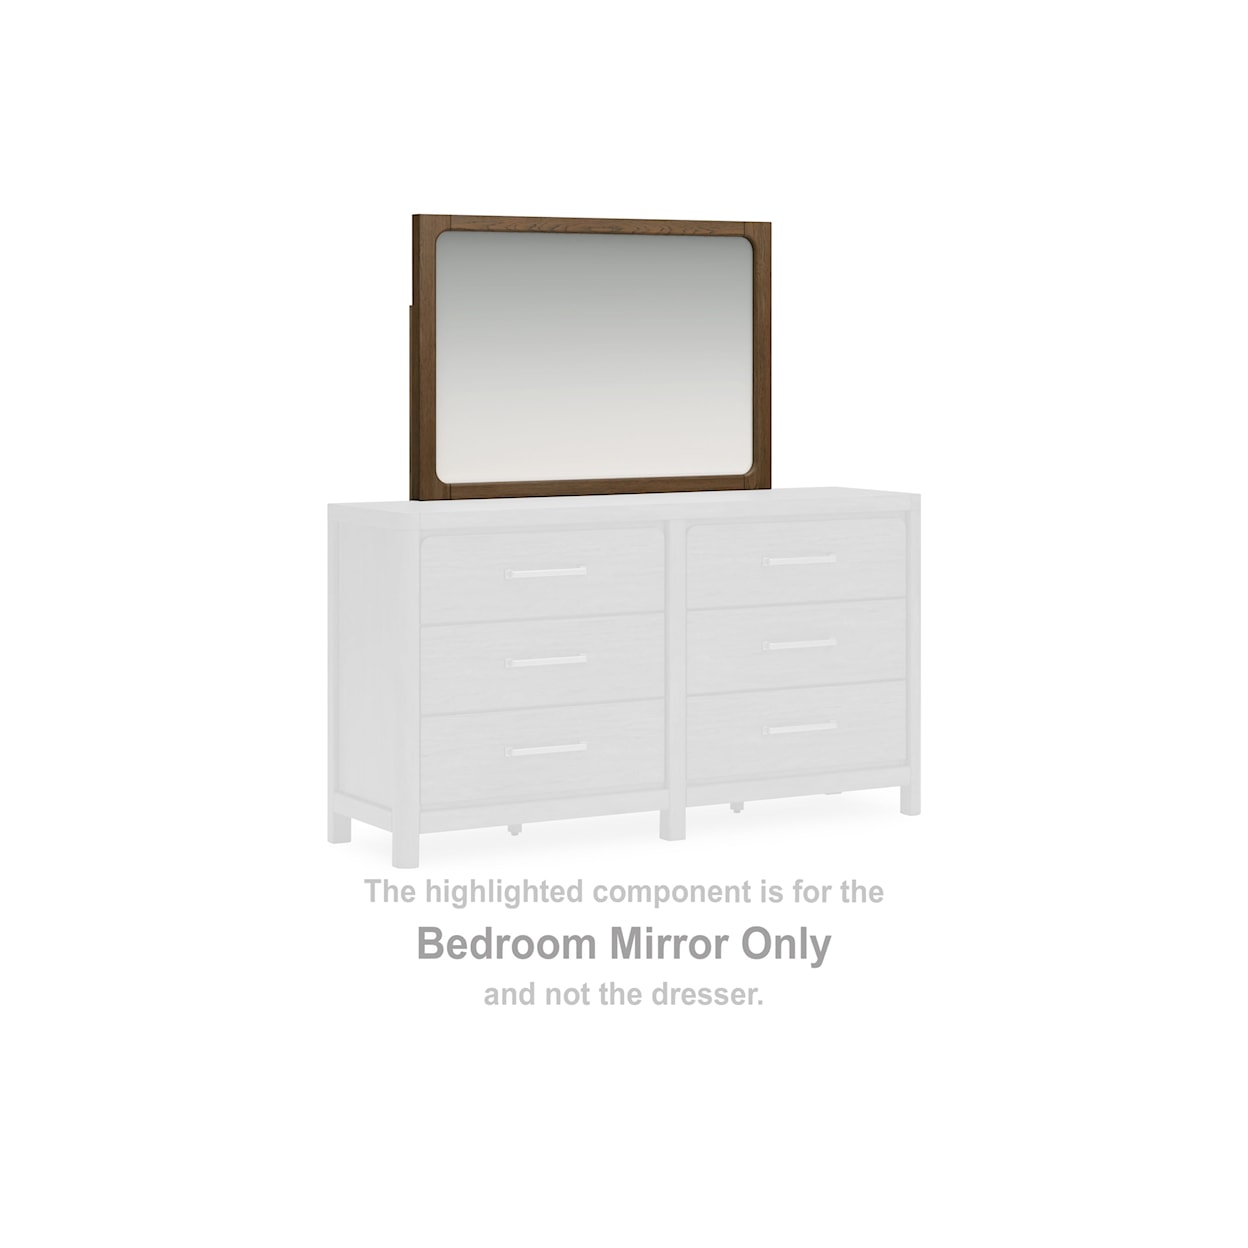 Benchcraft Cabalynn Bedroom Mirror